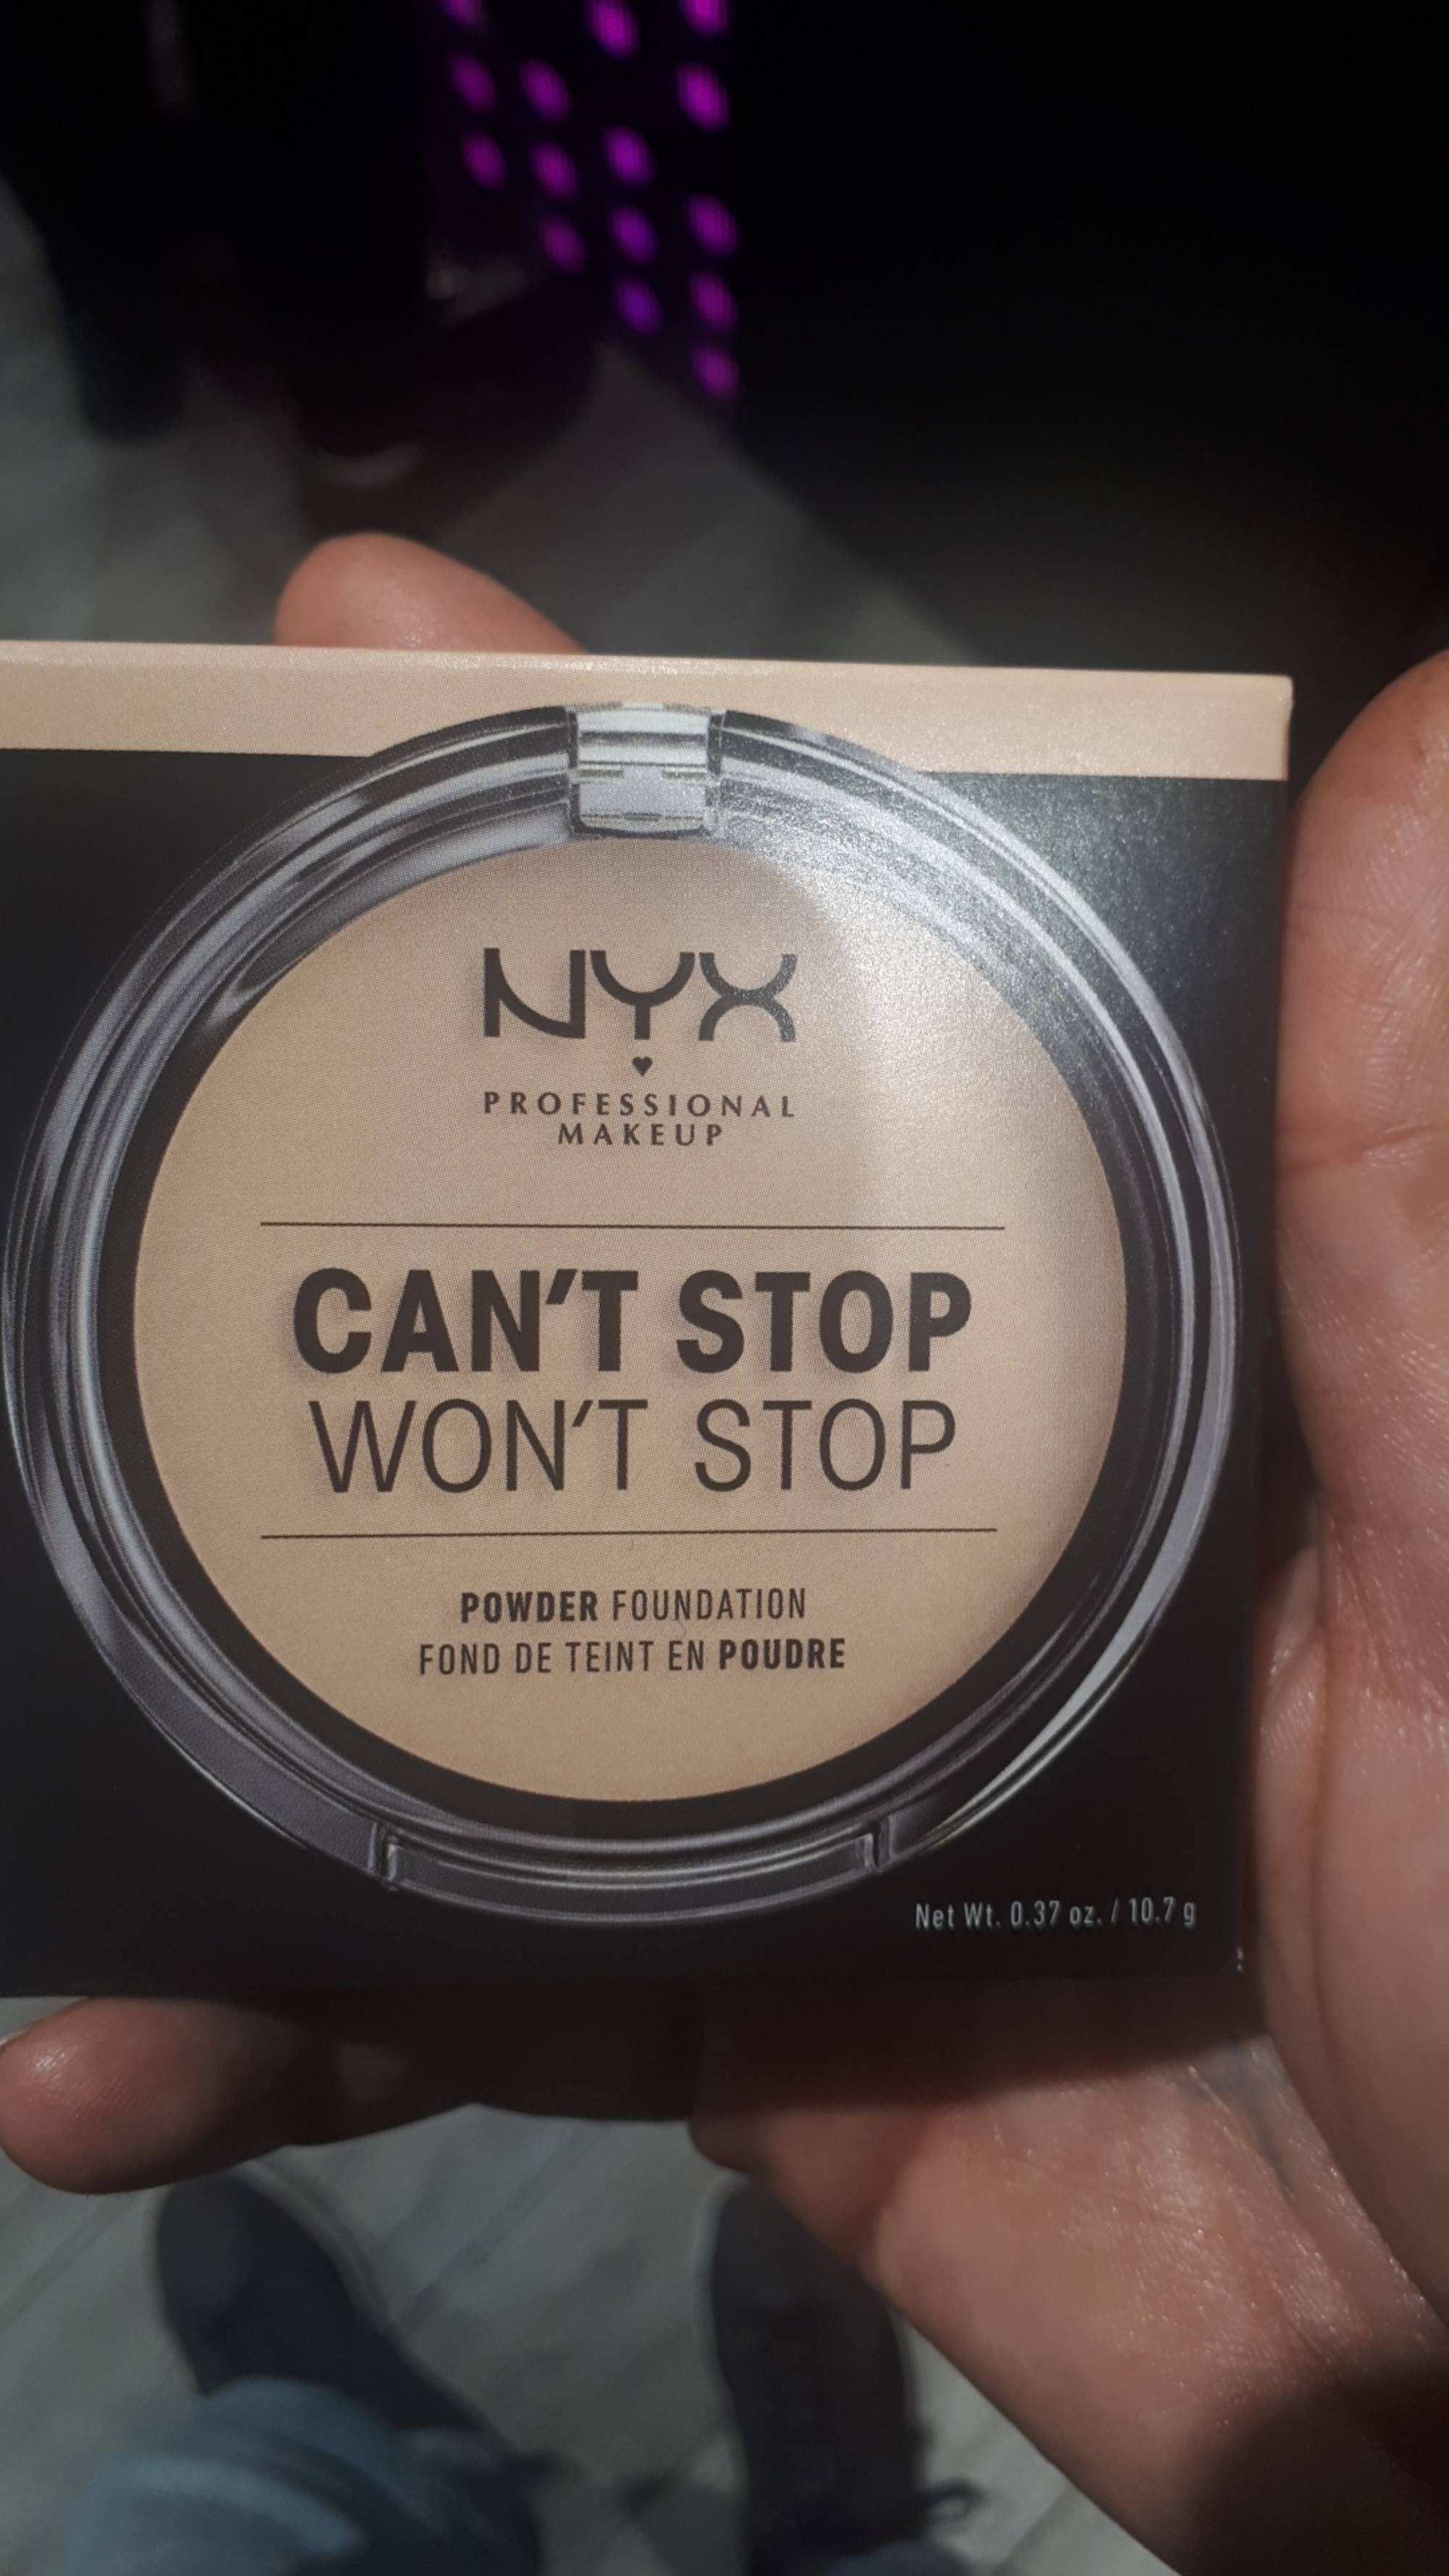 NYX - Can't stop won't stop - Fond de teint en poudre